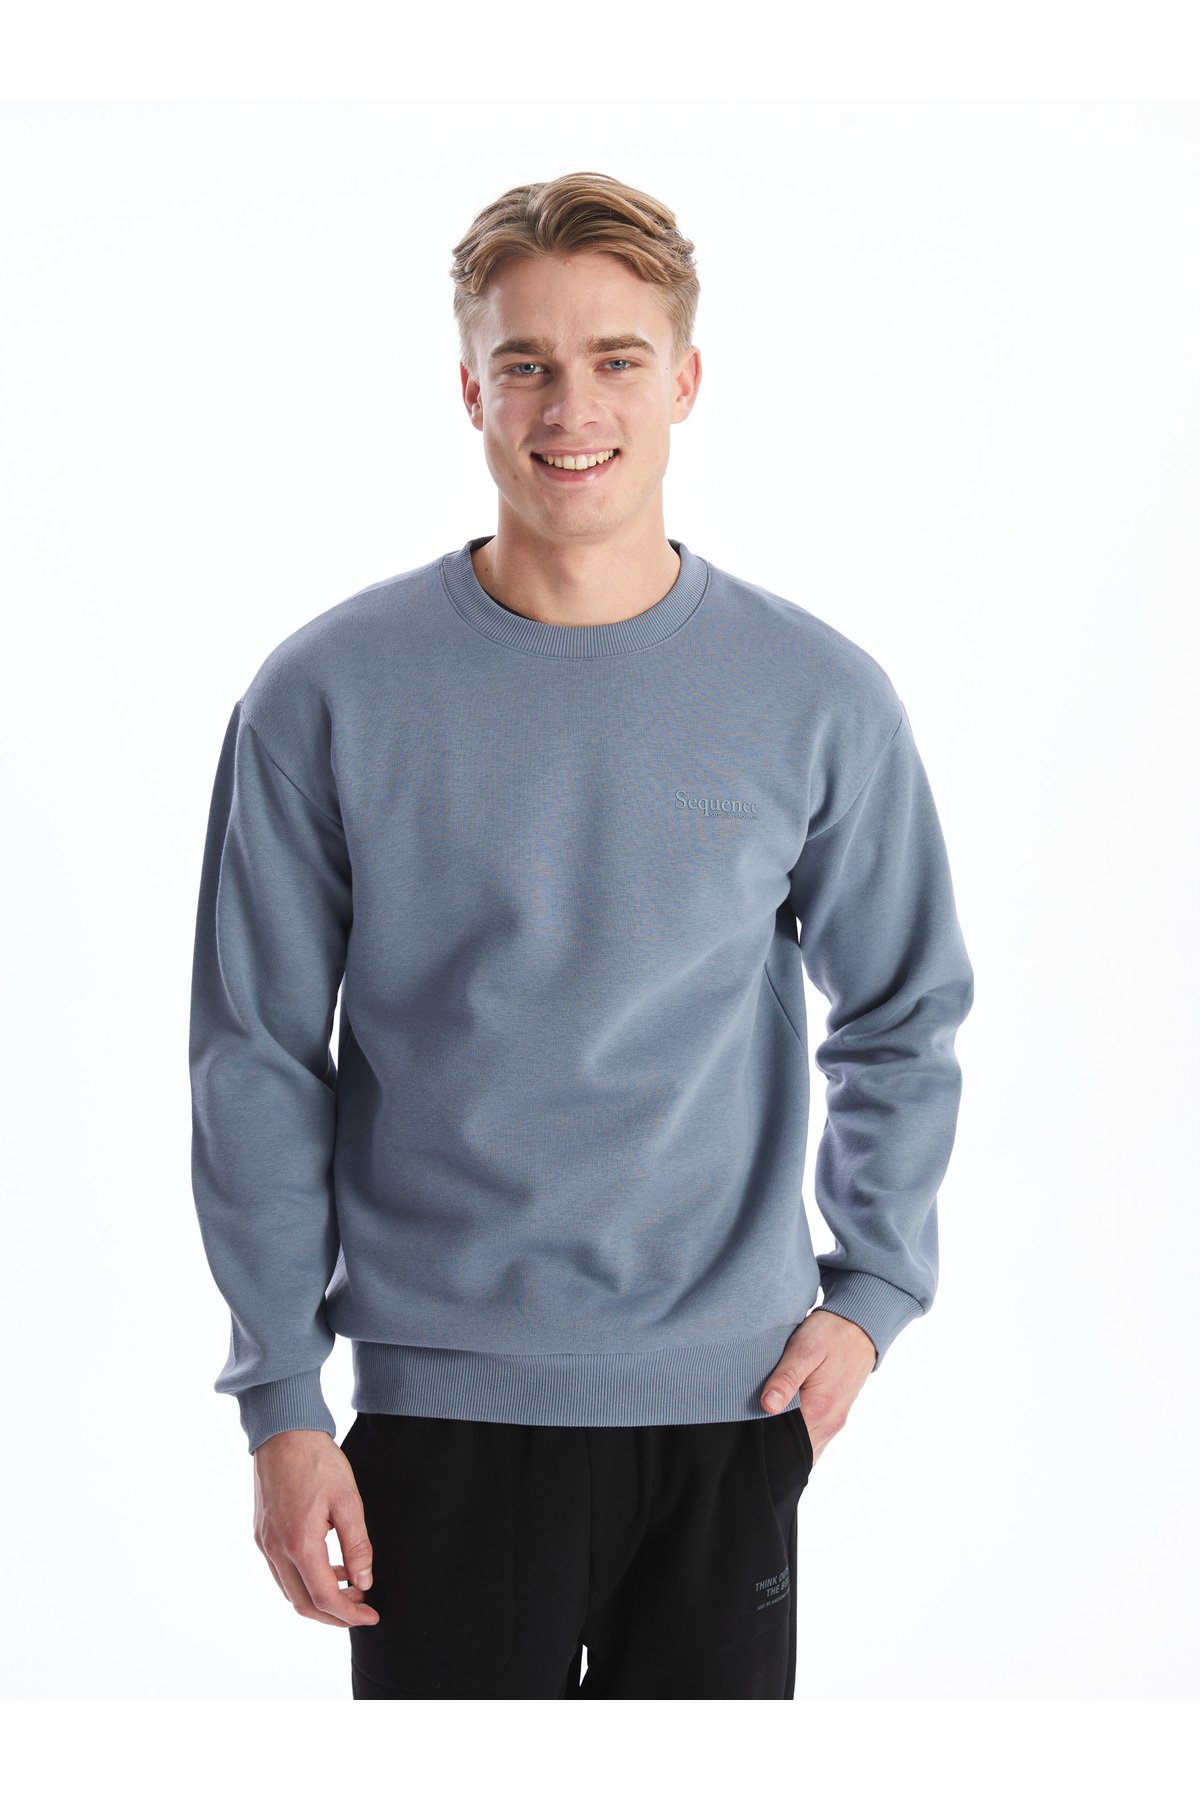 LC Waikiki Men's Crew Neck Long Sleeve Printed Sweatshirt